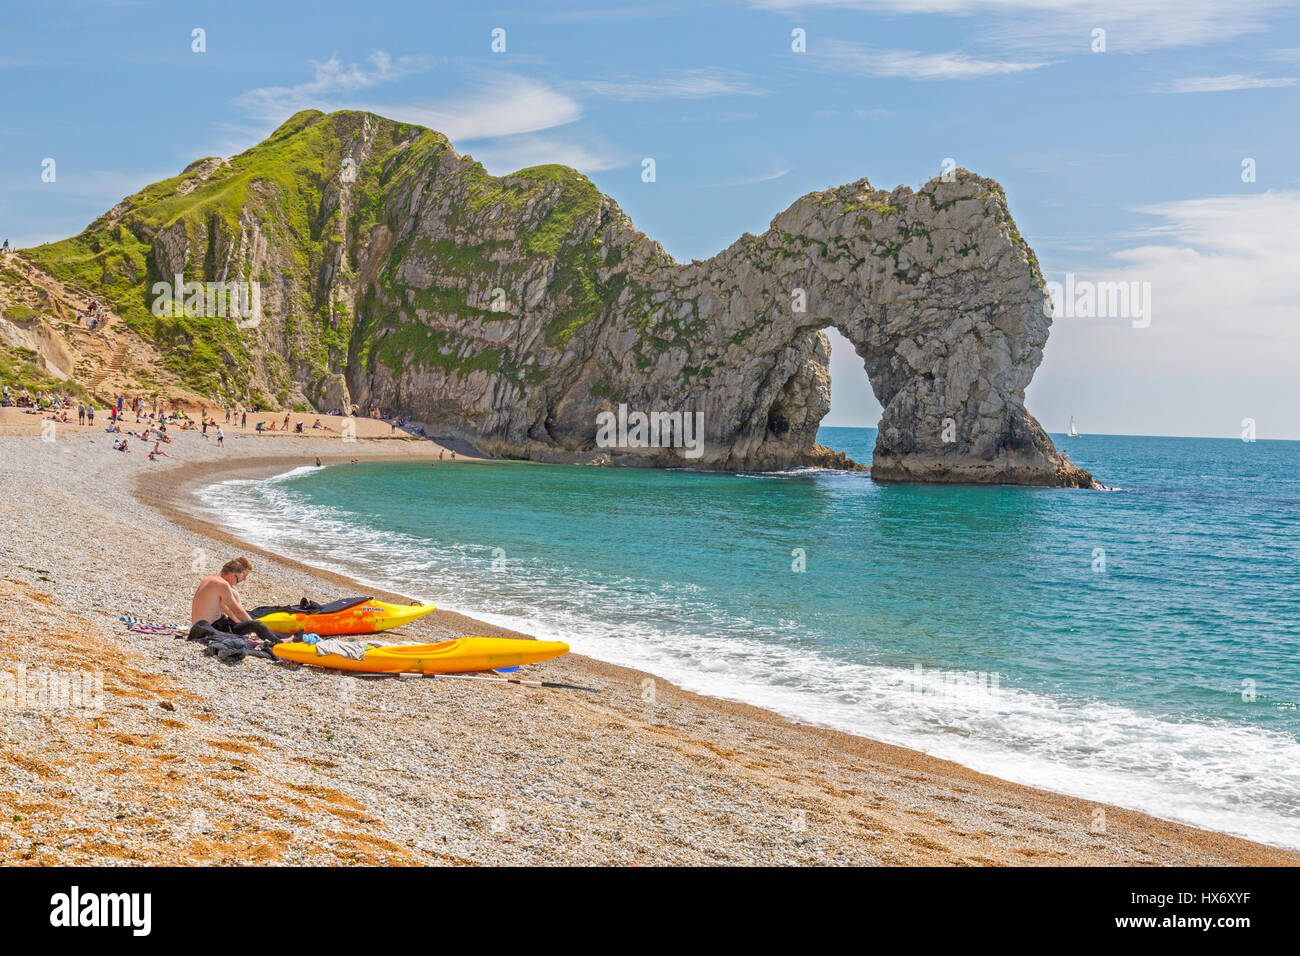 Der natürlichen Kalkstein Bogen bekannt als Durdle Door, bewundert von zwei Kajakfahrer Meer befindet sich auf der South West Coast Path, Jurassic Coast, Dorset, England Stockfoto